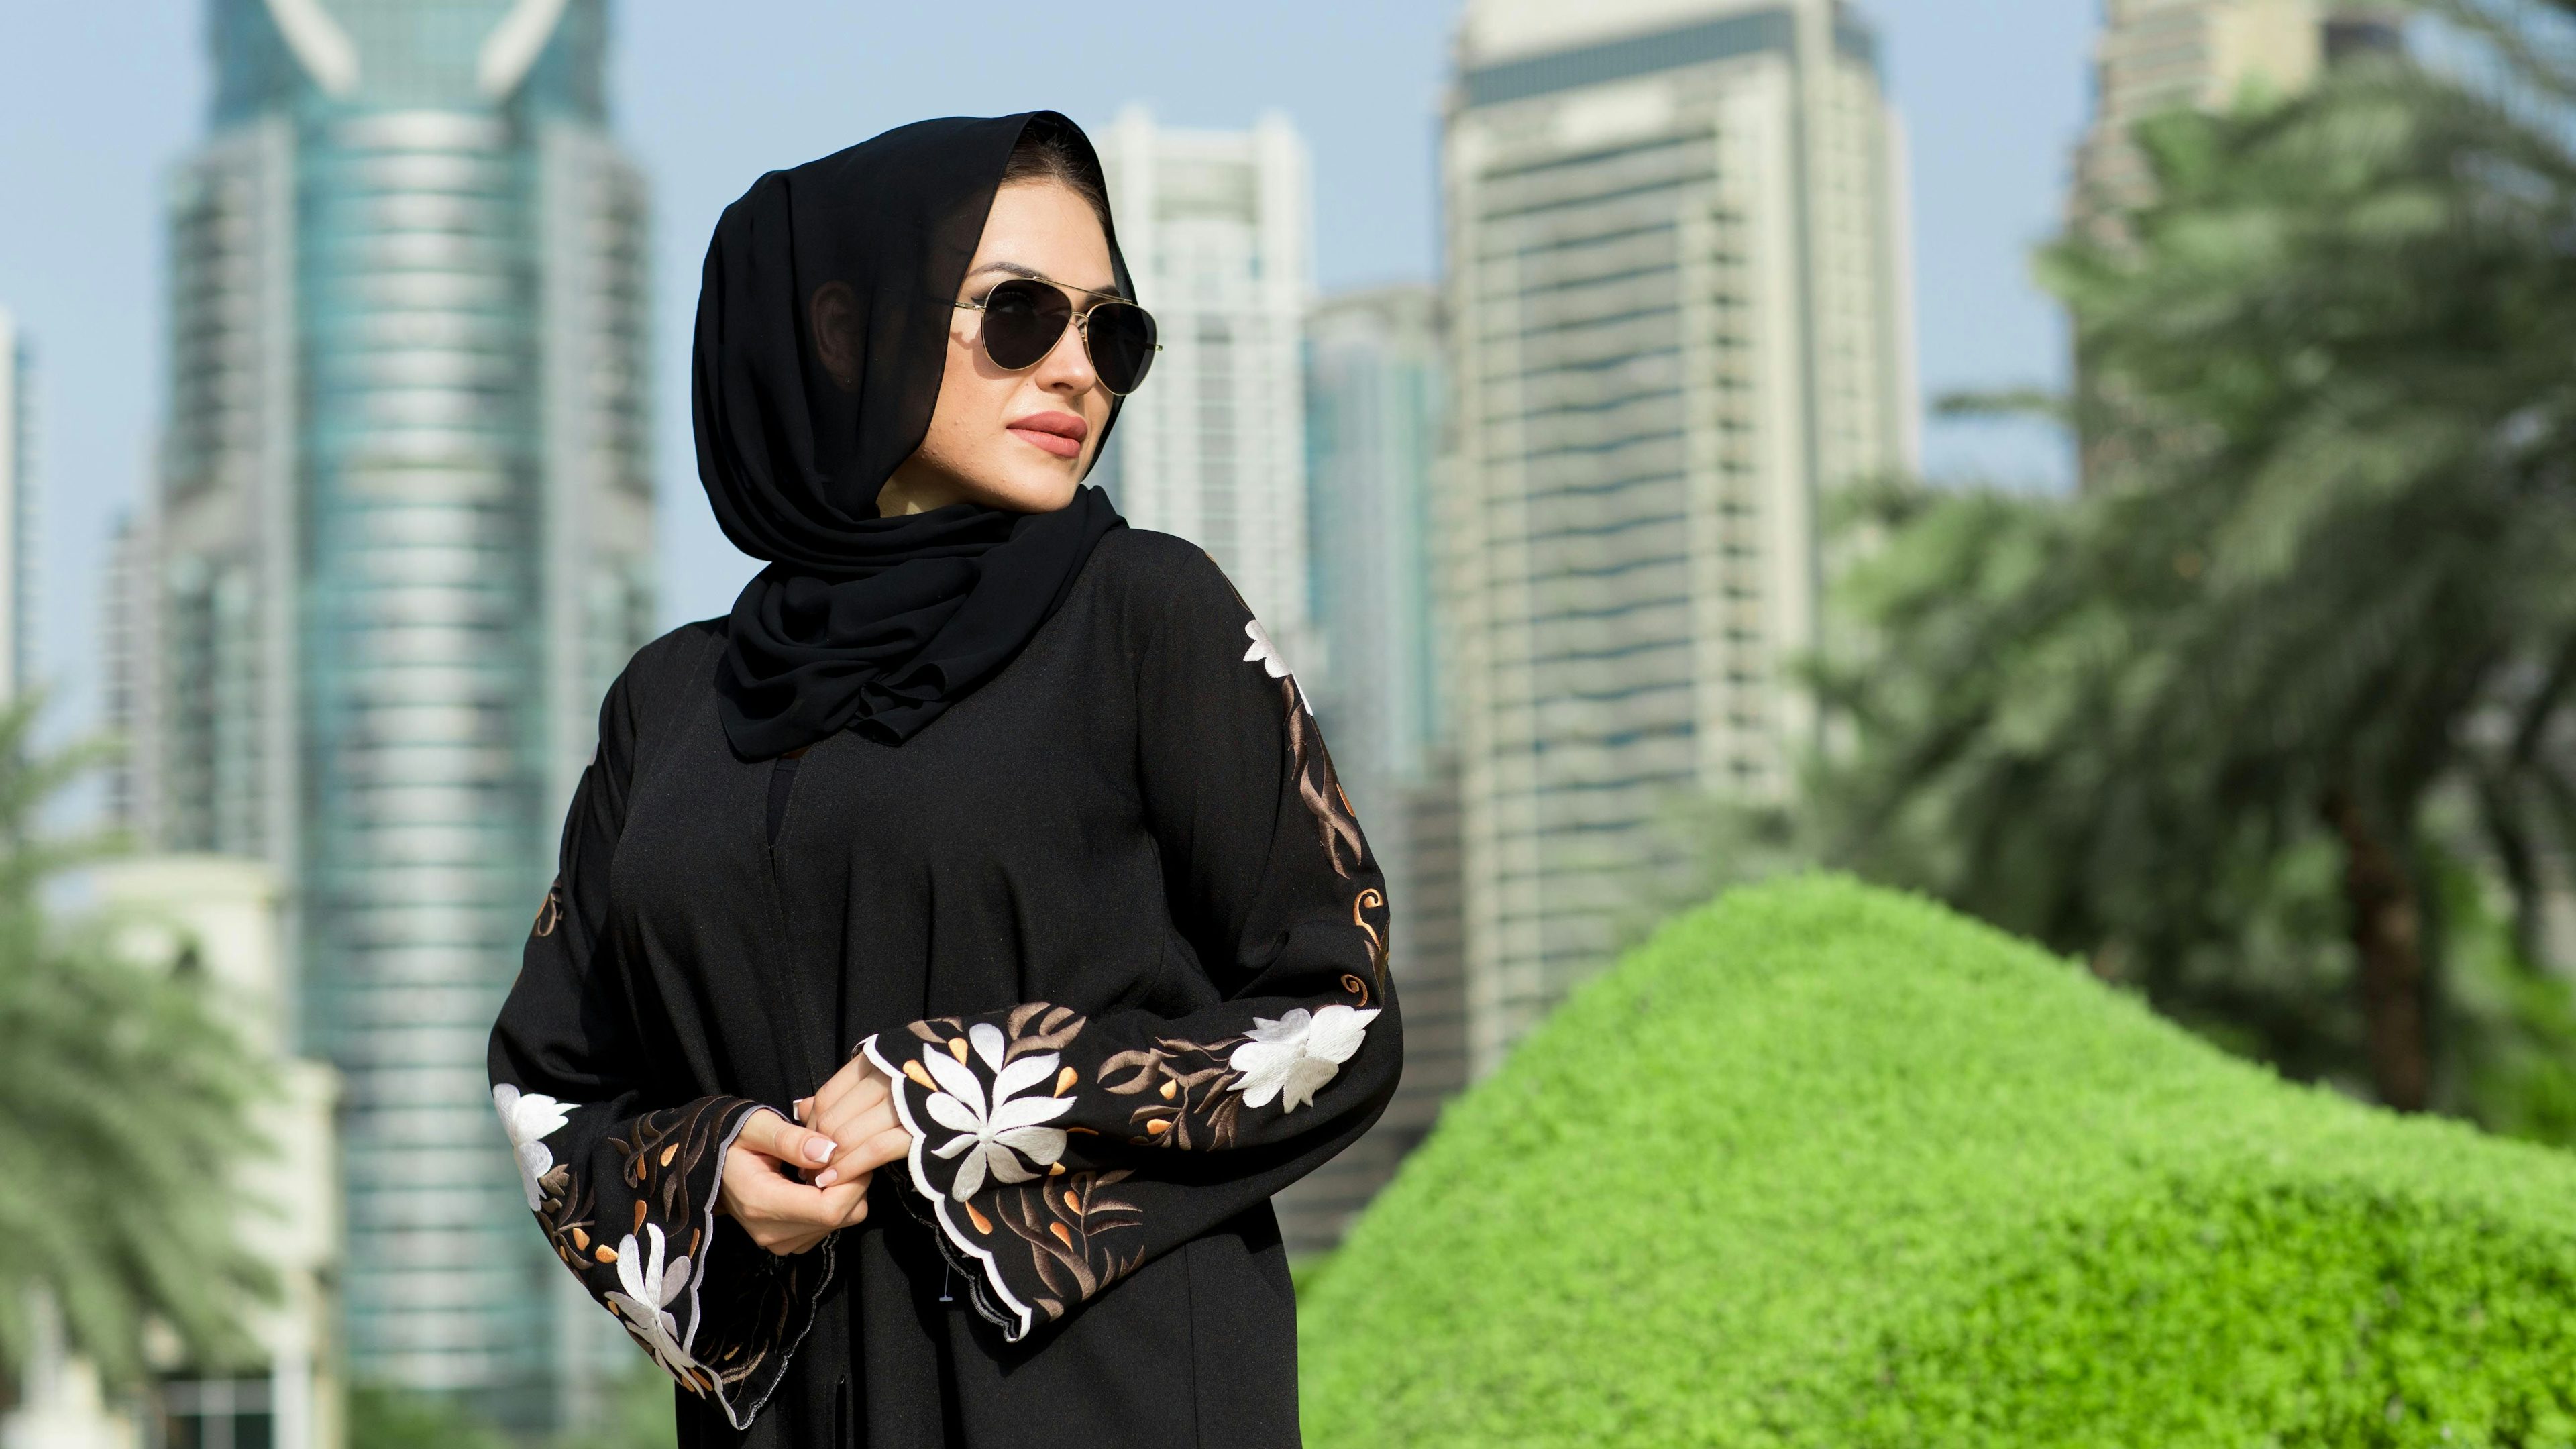 Inside Saudi’s luxury evolution: Gen Z, women, innovation lead